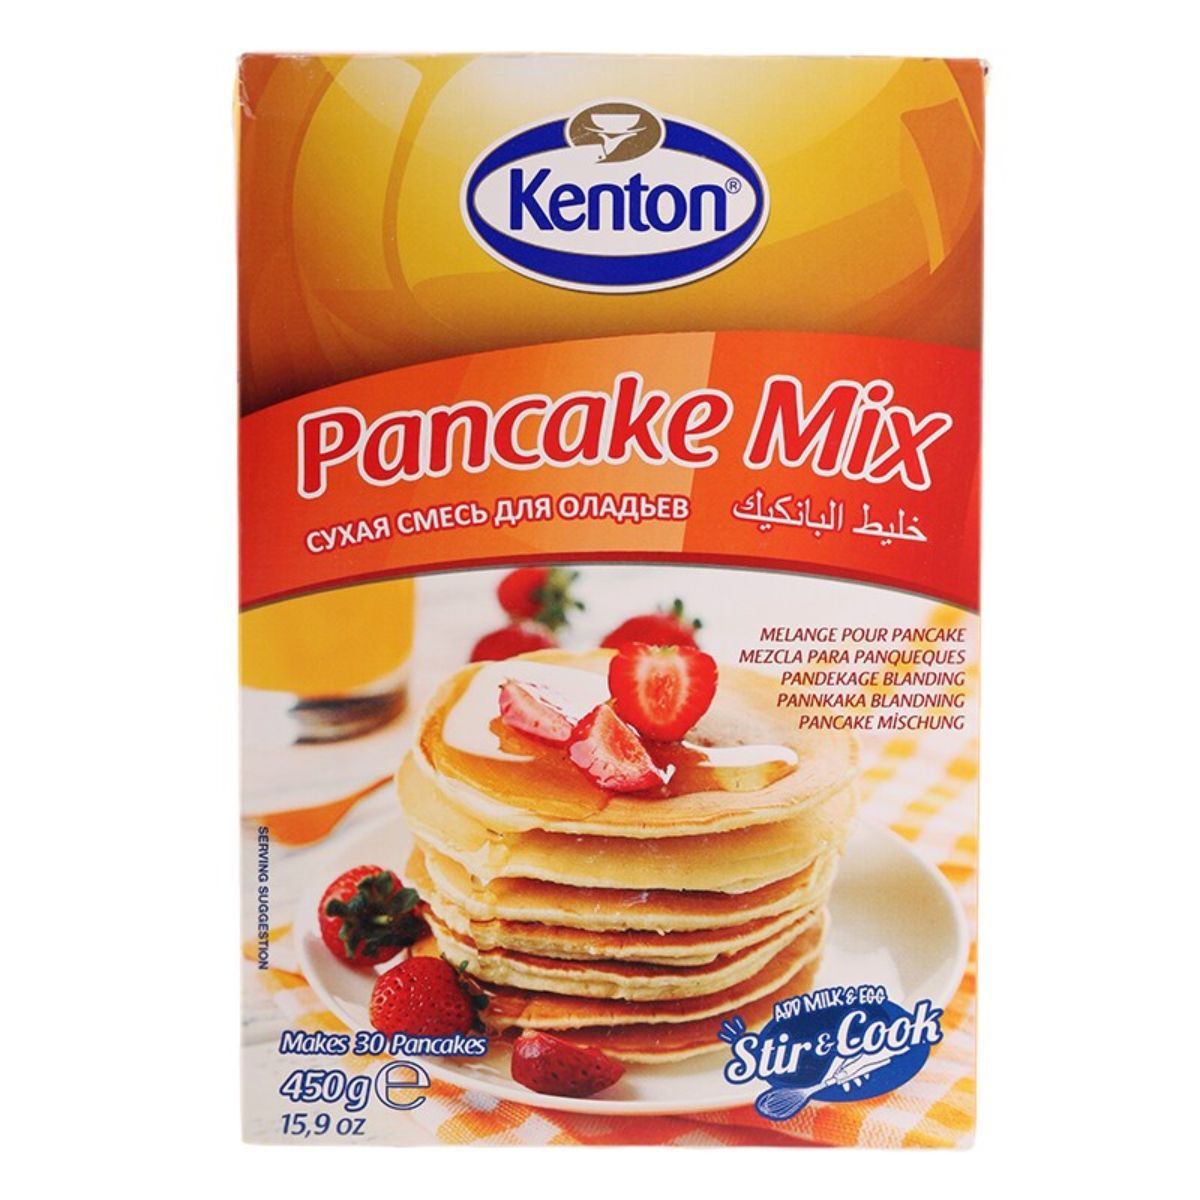 Kenton - Pancake Mix - 450g in a box.